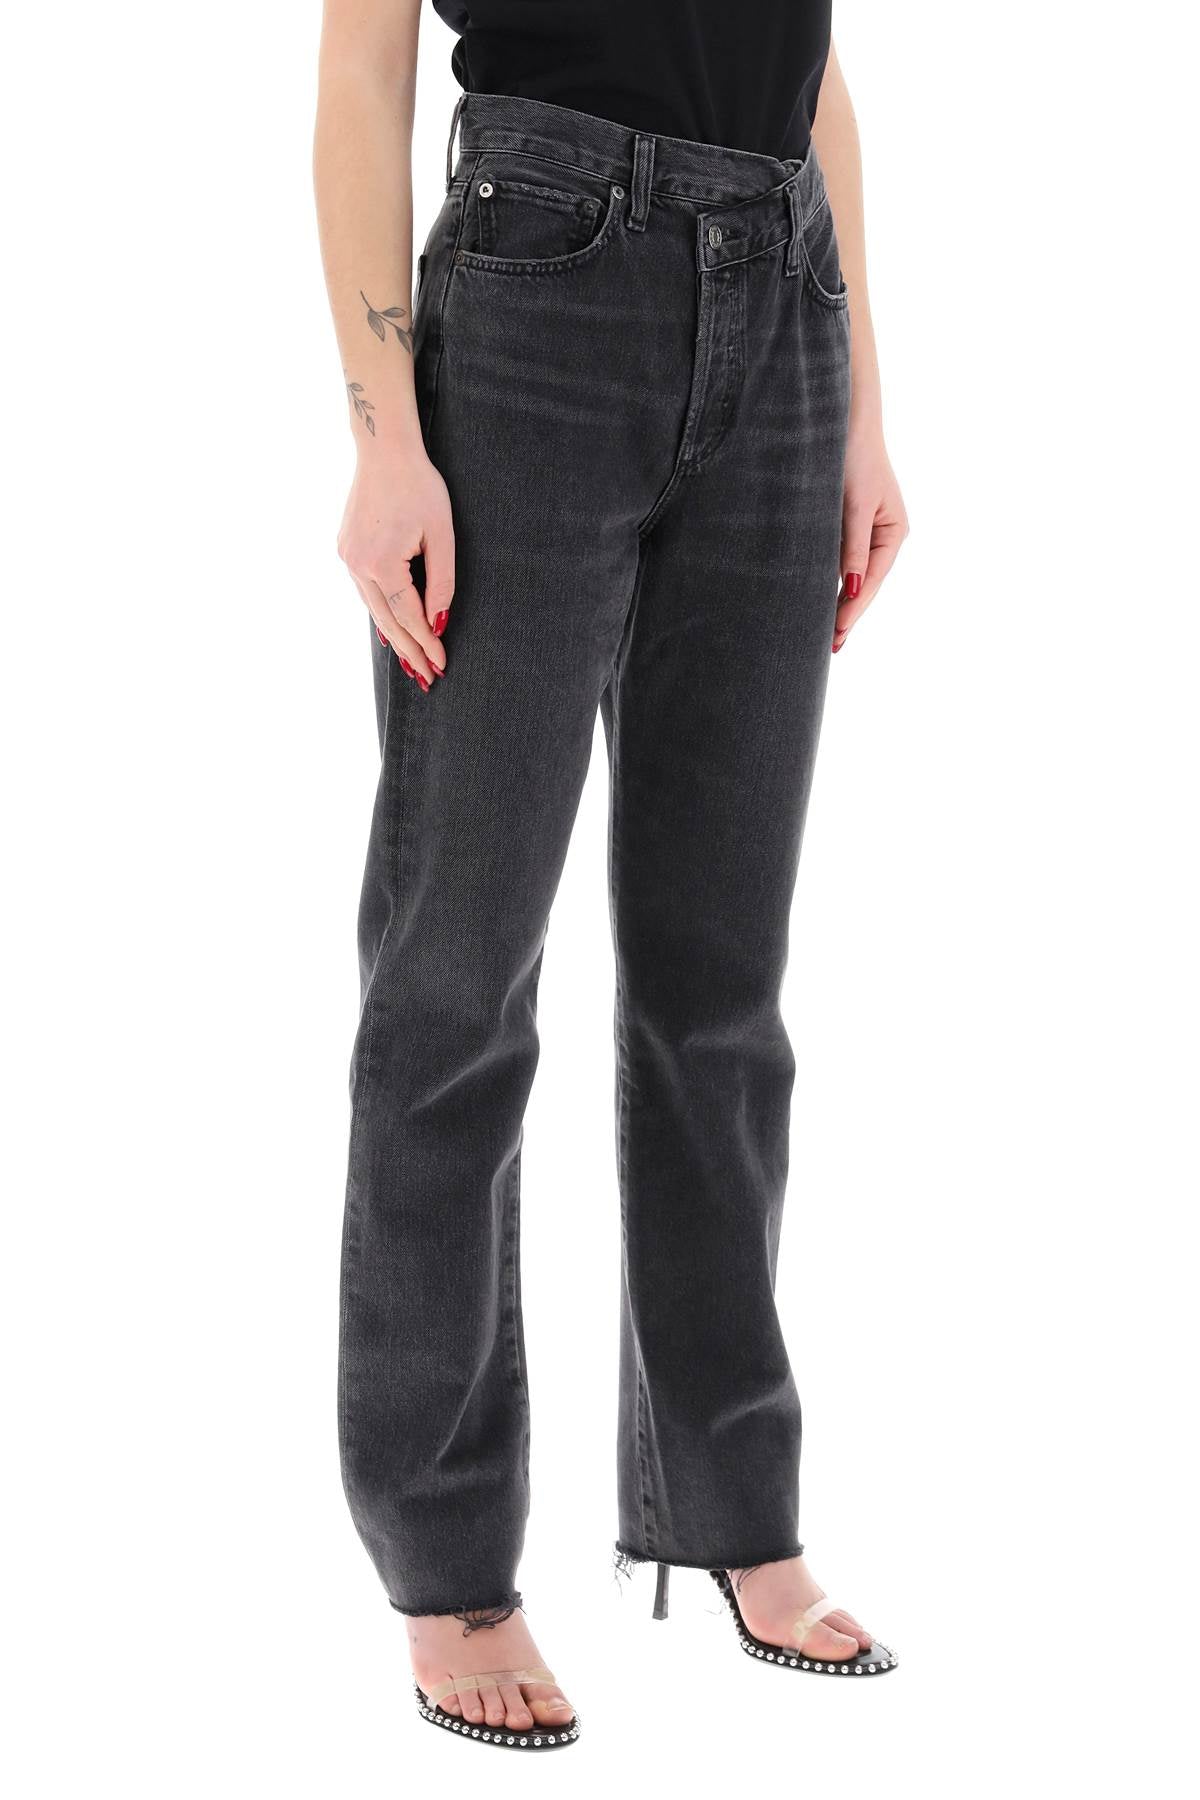 Agolde offset waistband jeans-1